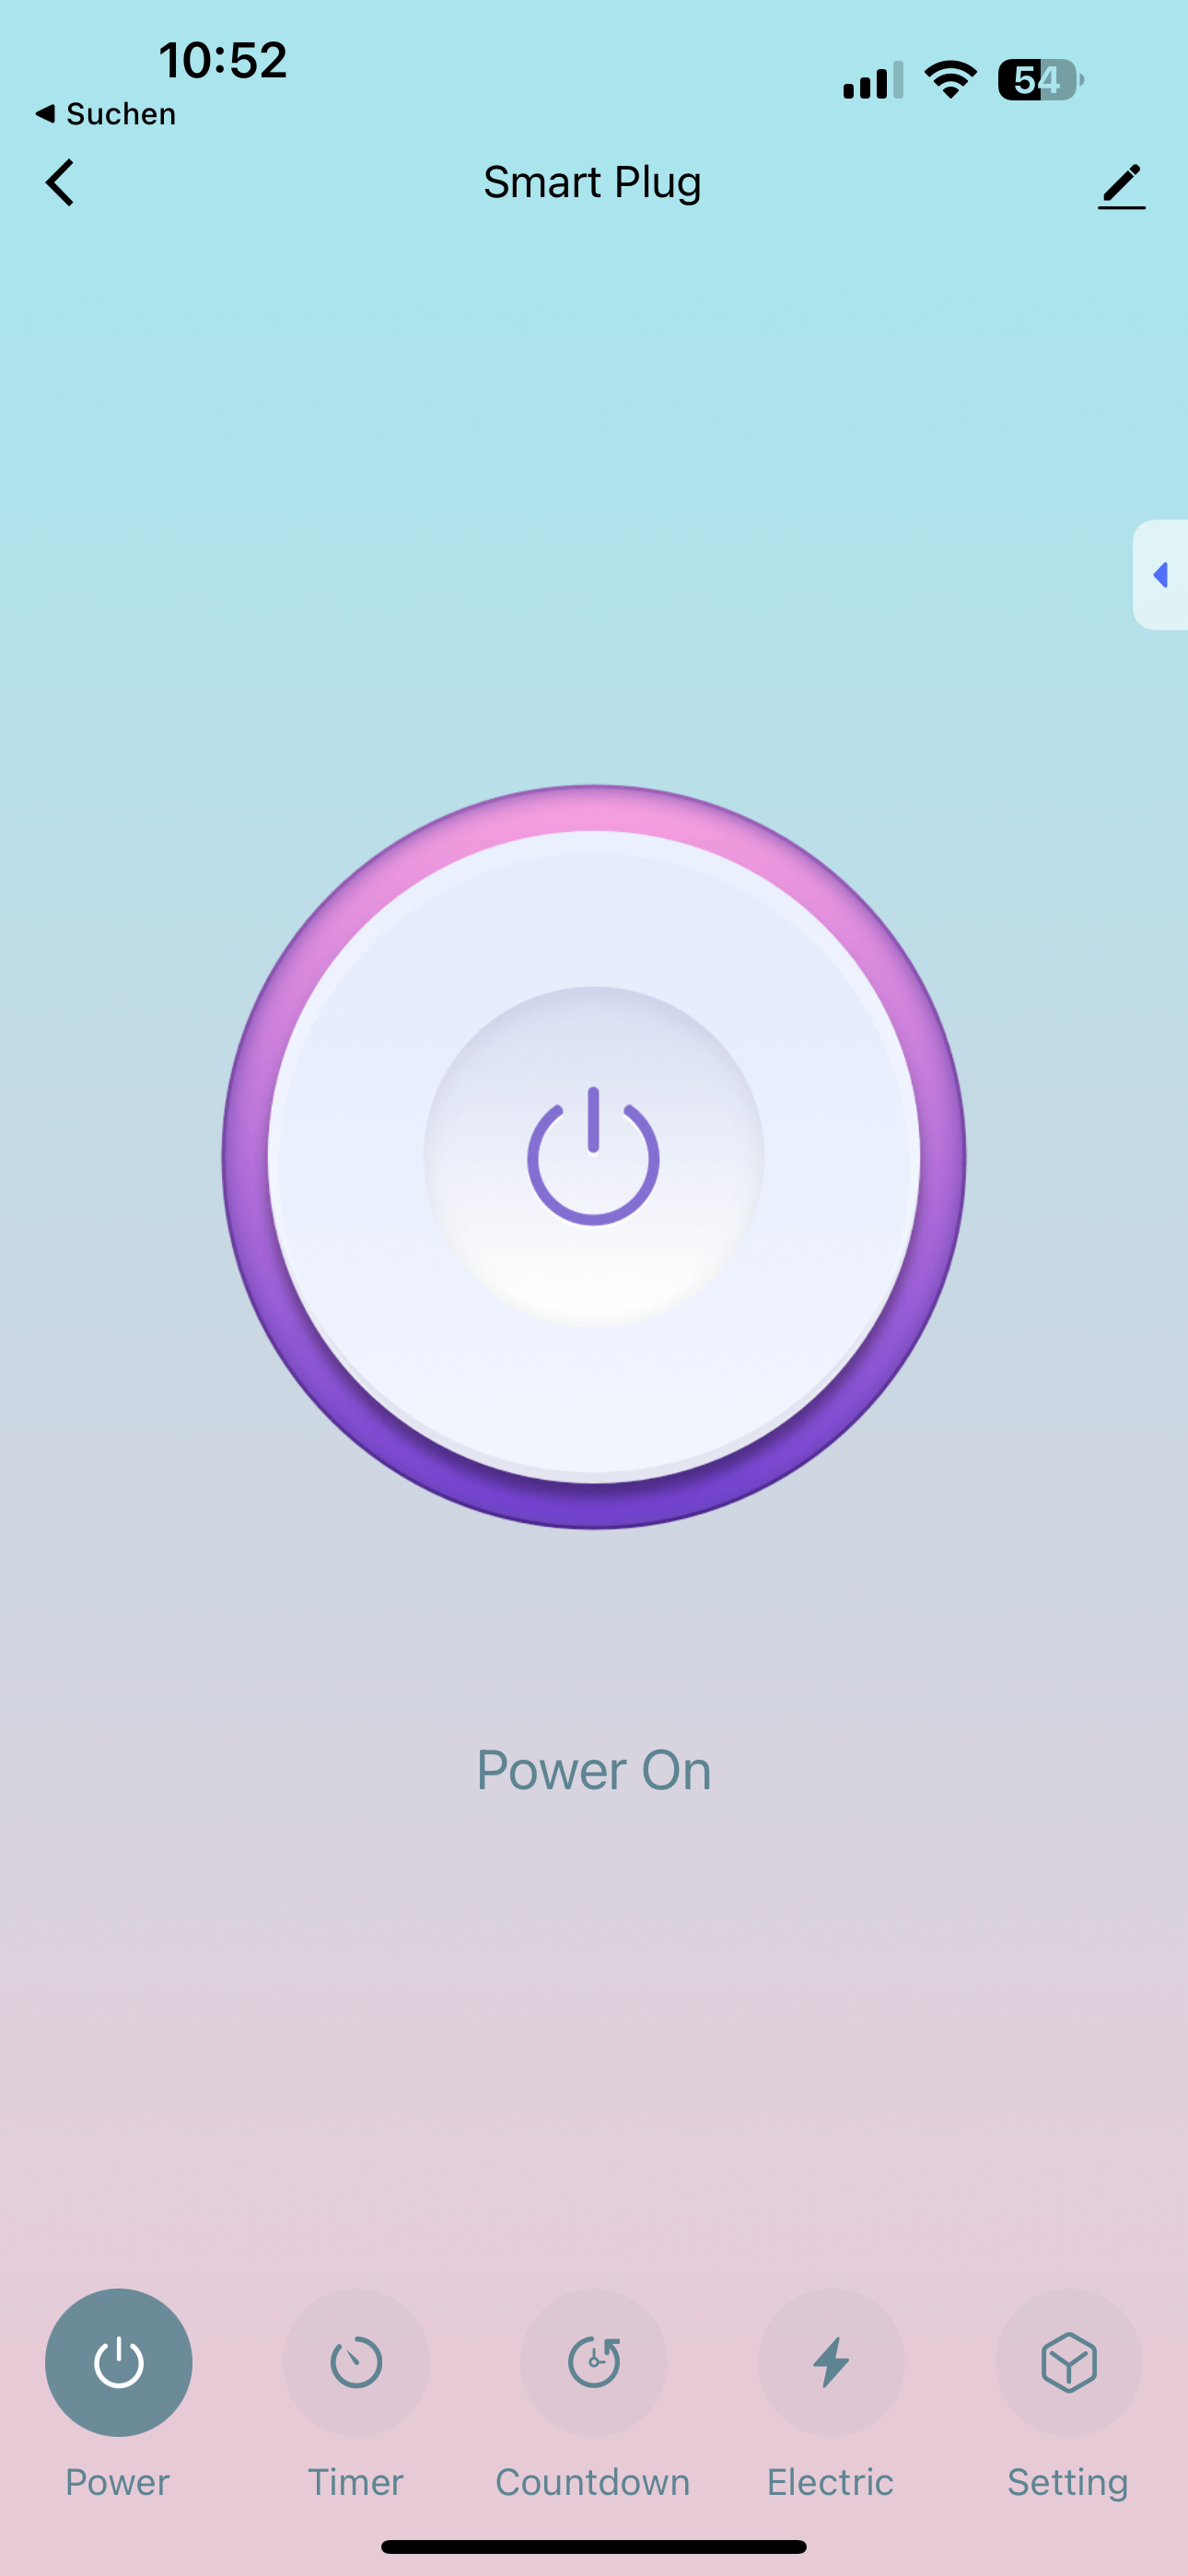 Smart Plug App Startseite - Eingeschaltet